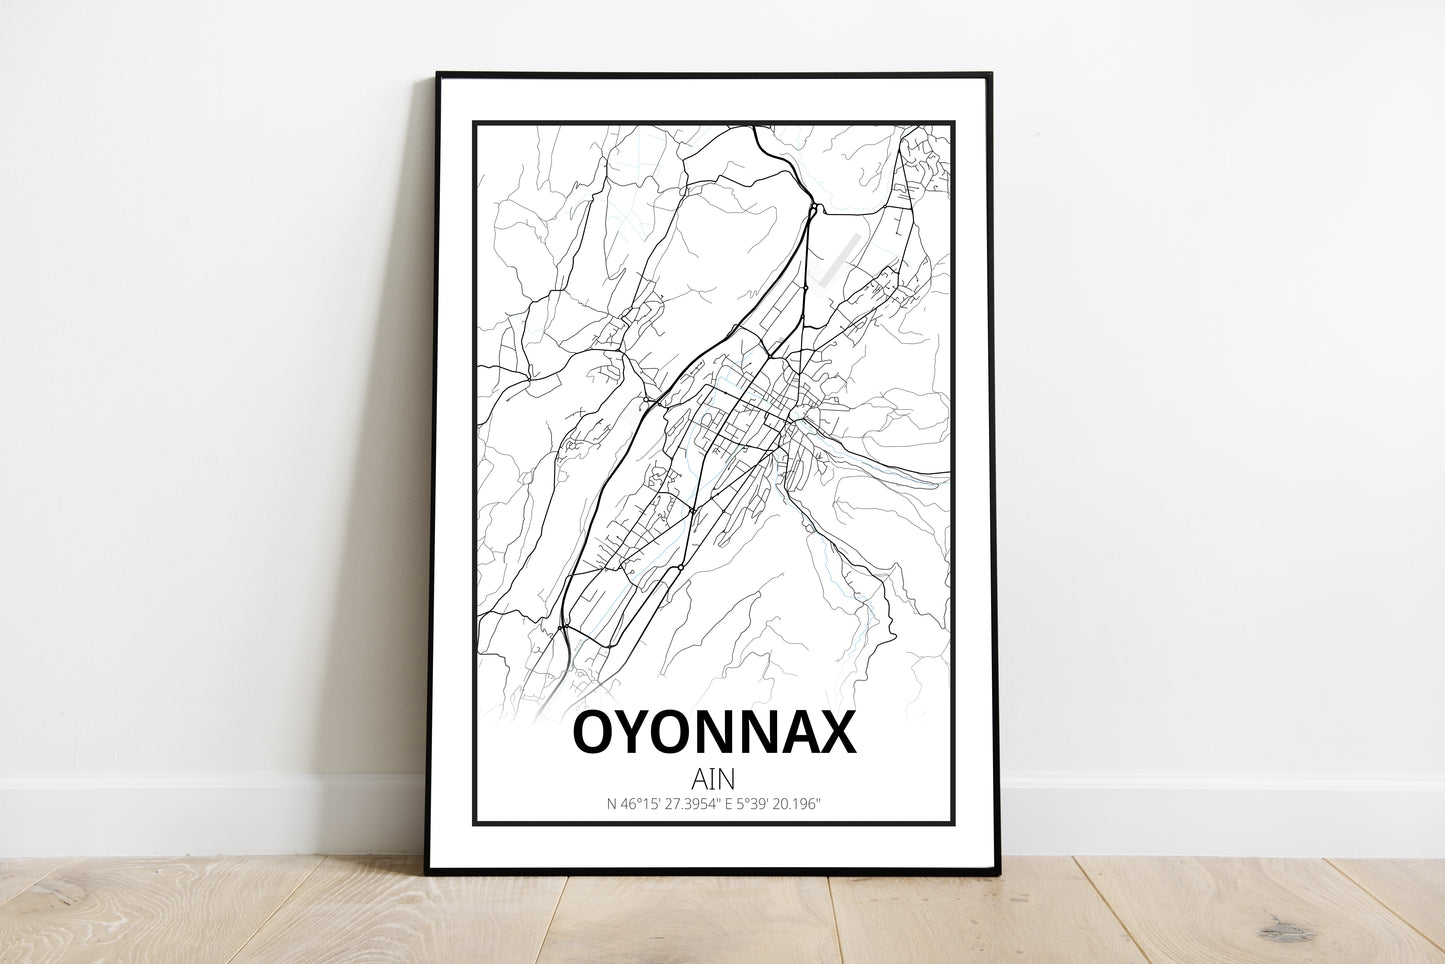 Oyonnax - Ain